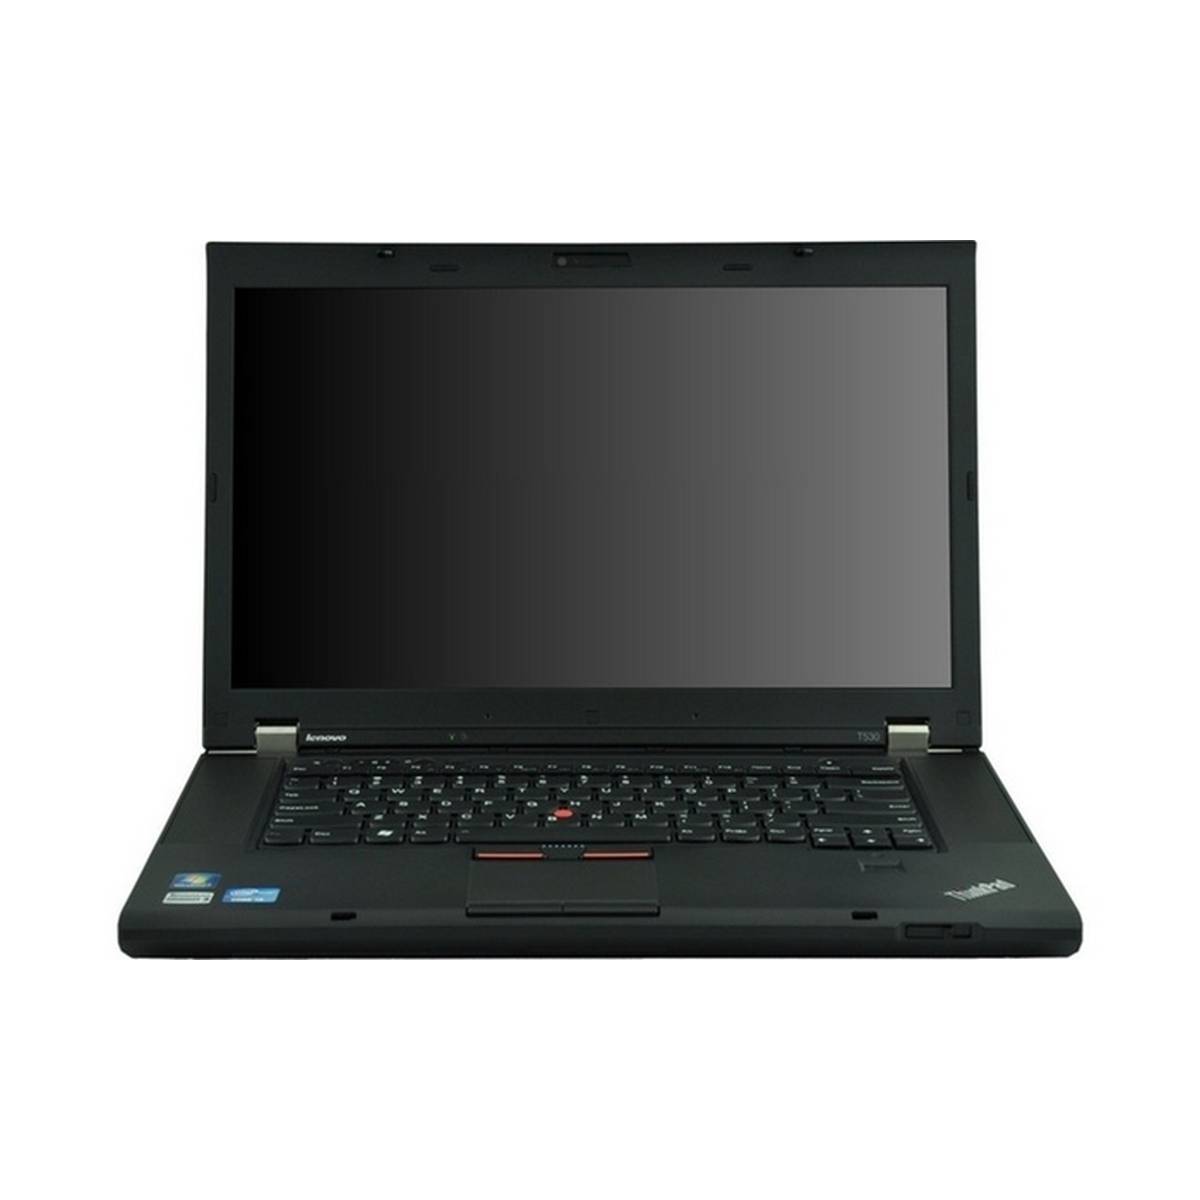 Lenovo Thinkpad T530 2359 - 15.6 - Core I3 3320m - Windows 7 Pro 64-bit - 4 Gb Ram - 320 Gb Hdd Series